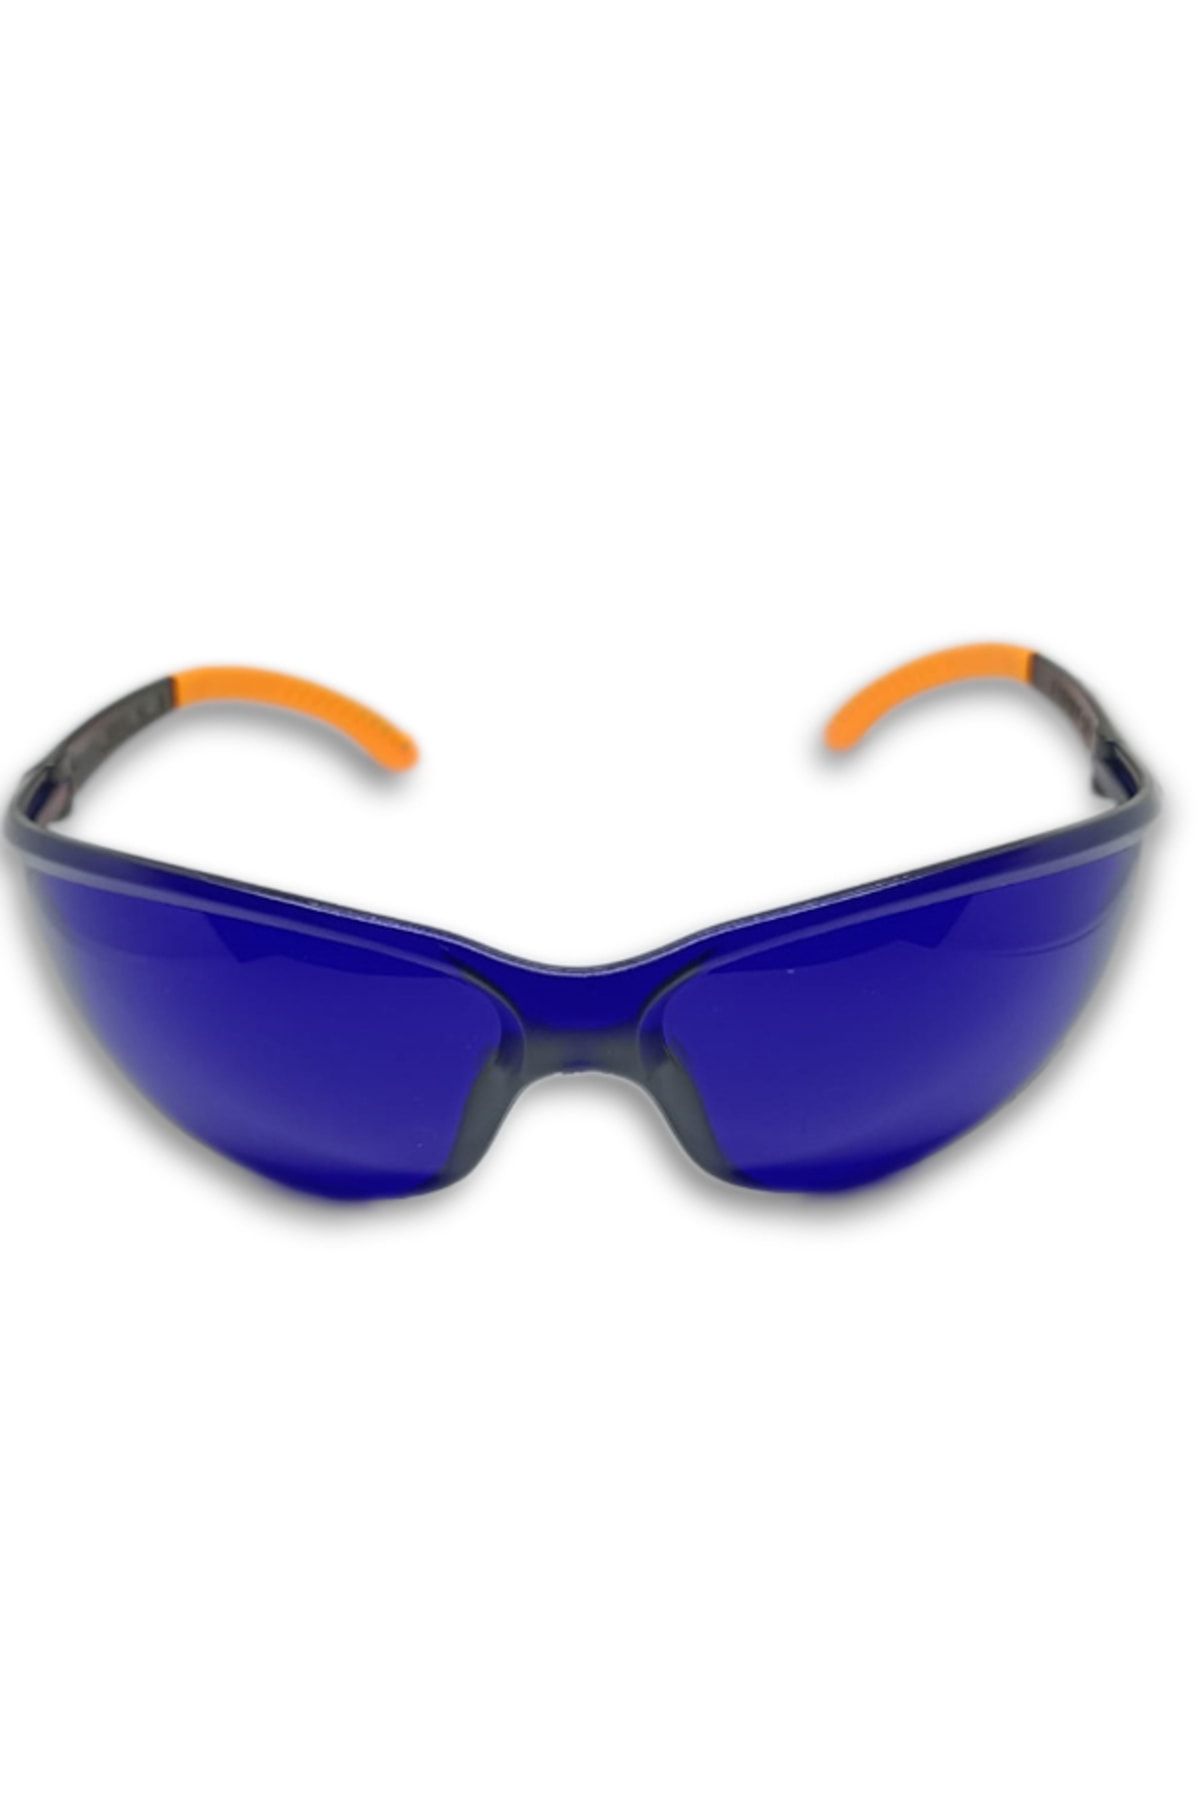 ARMONİKONYA Sport Mavi Ipl Lazer Uygulama Epilasyon Gözlüğü Mavi Işın Koruyucu Gözlük Göz Koruyucu Lazer